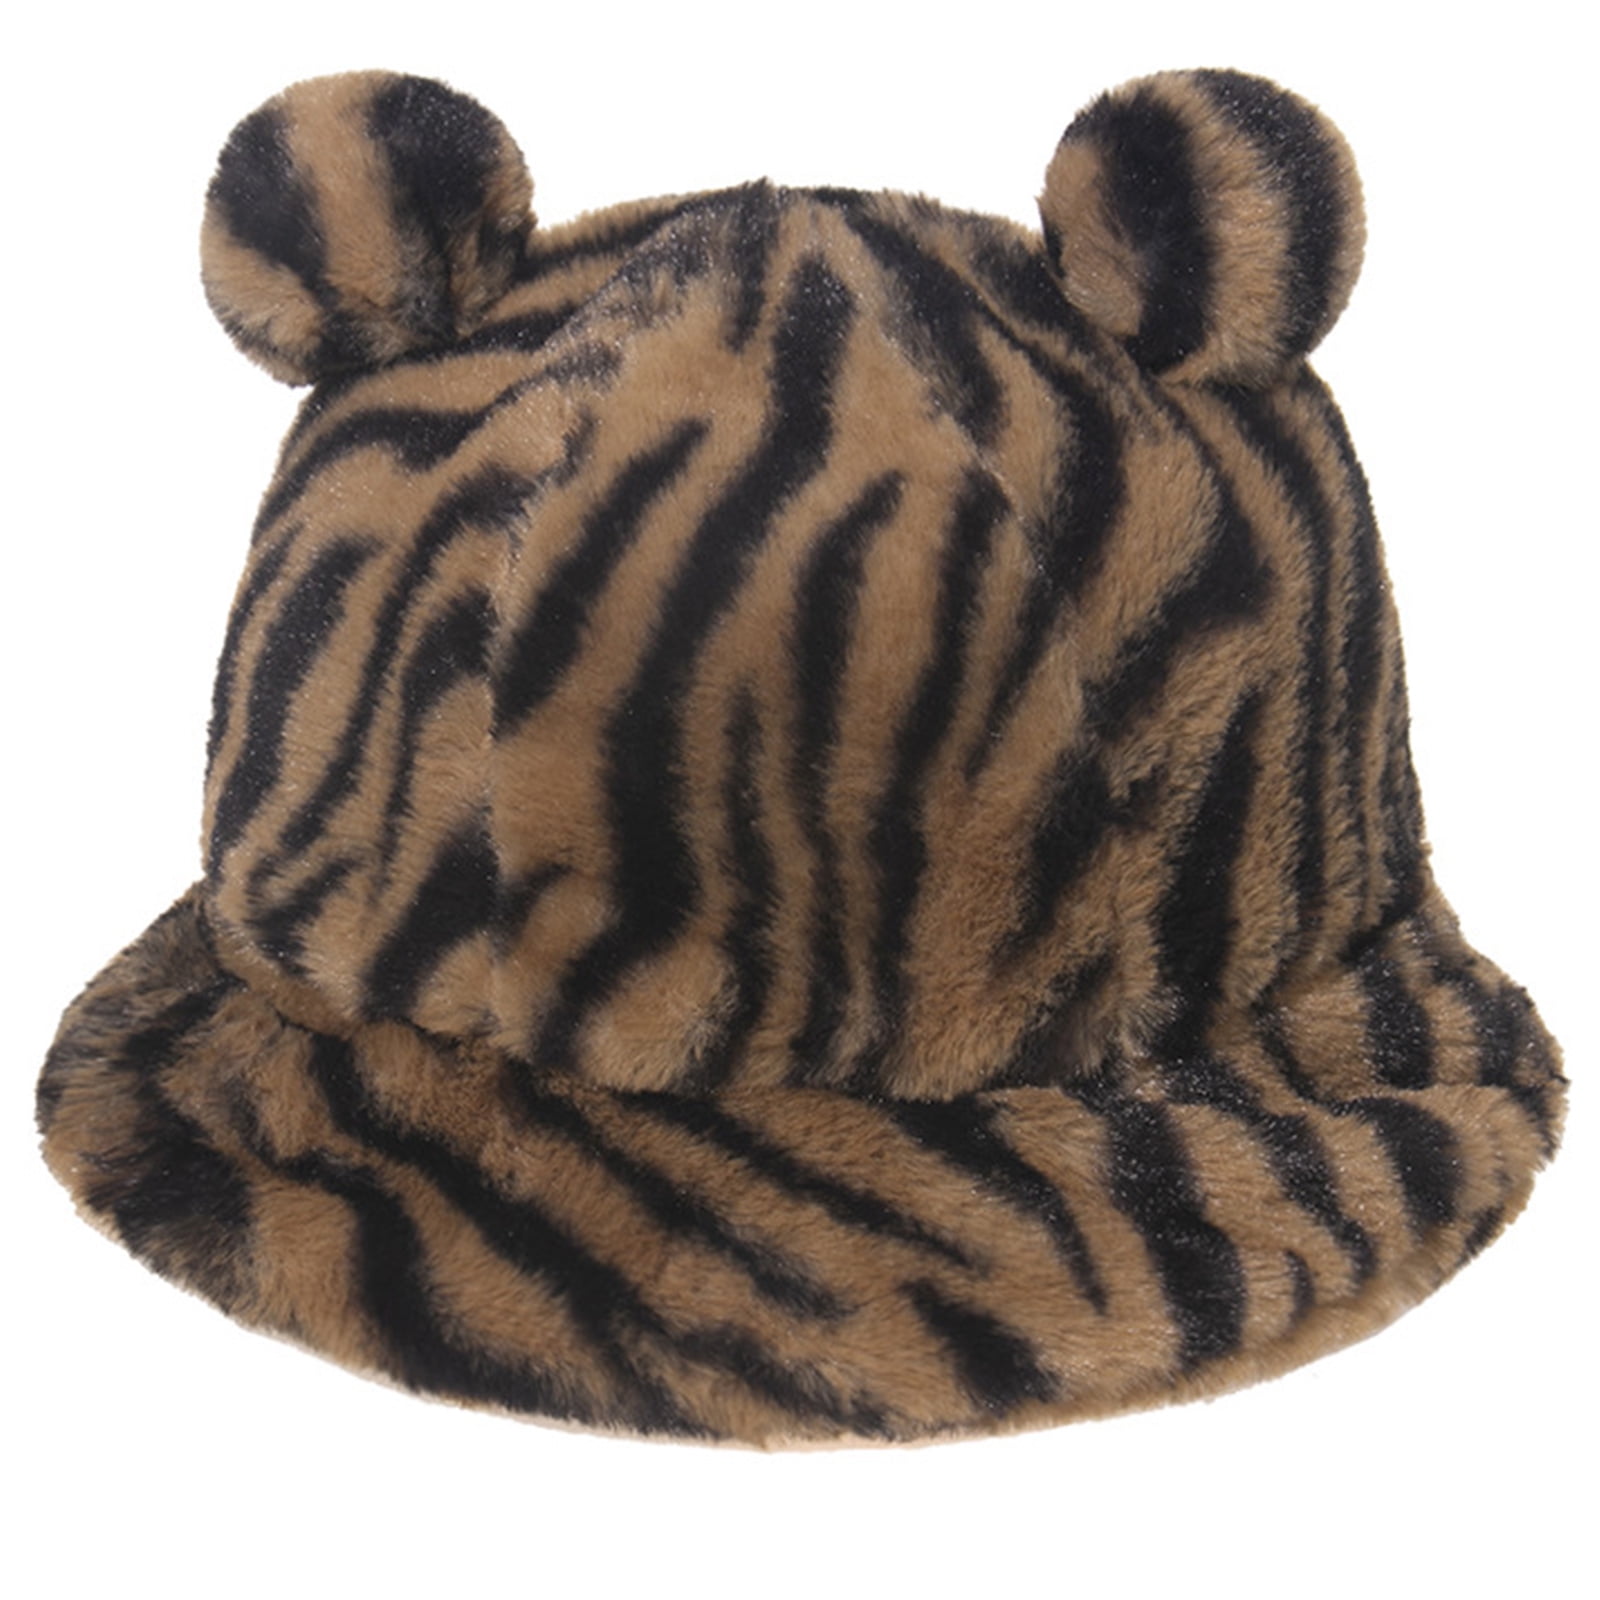 Unisex Bucket Hats Faux Fur Fisherman Cap Leopard,Zebra,Milk Cow Print Warm Ladies Cap Outdoor Windproof Cap 